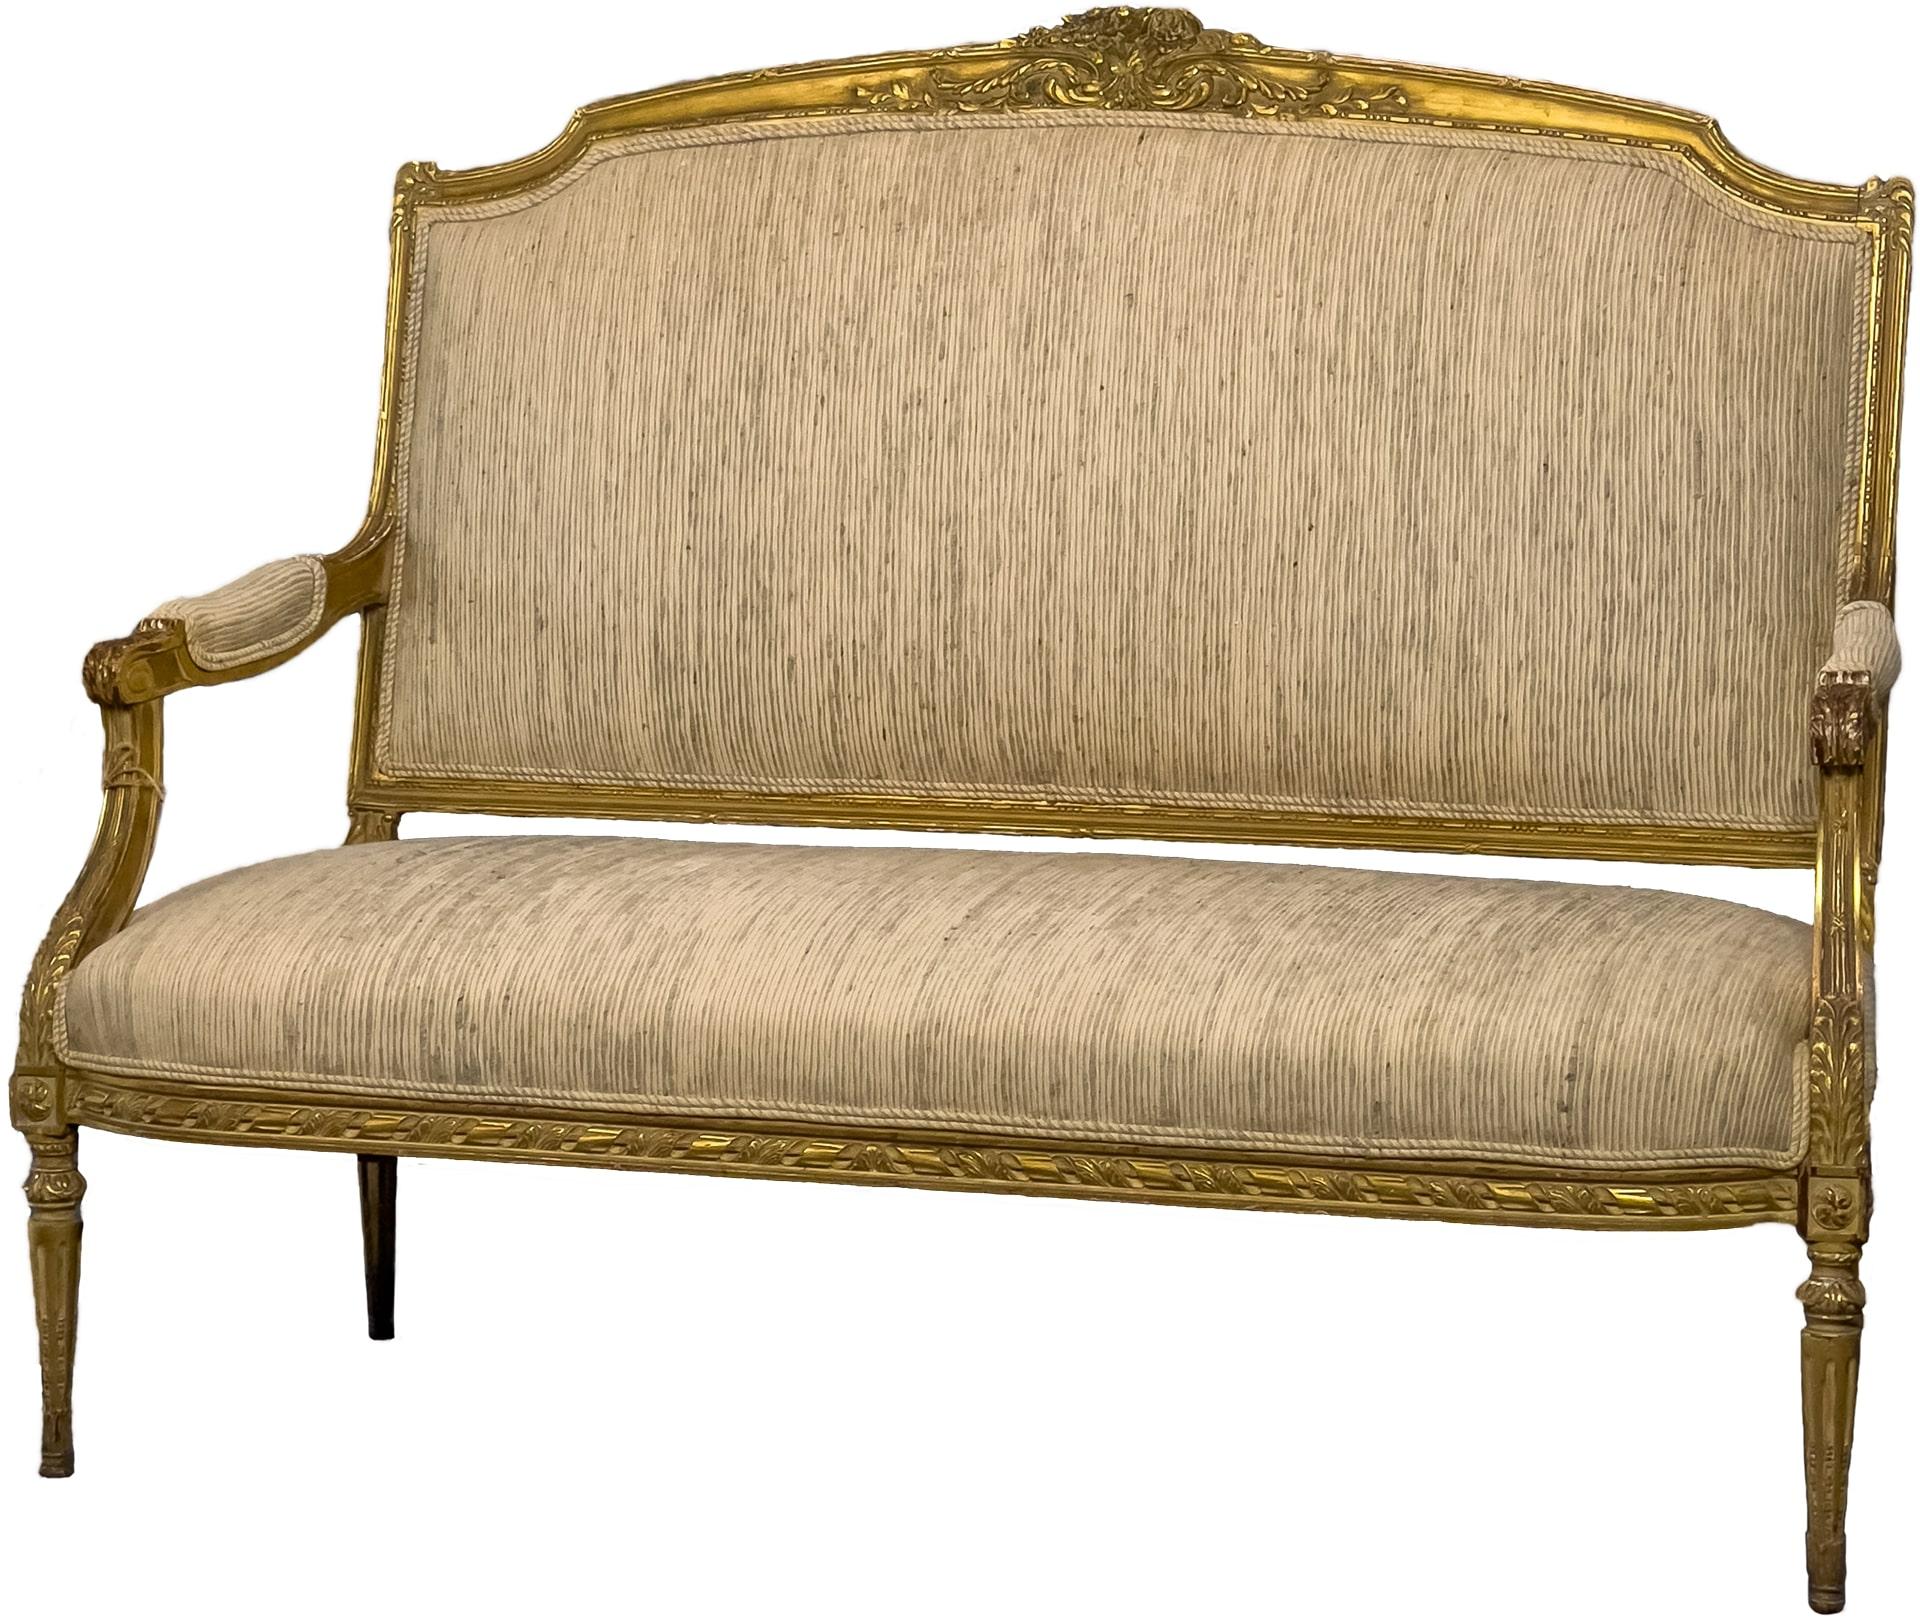 Schöne antike Louis XVI vergoldet und Holz-Sofa. Dieses Sofa stammt aus Frankreich und hat schöne Schnitzereien an den Rändern.